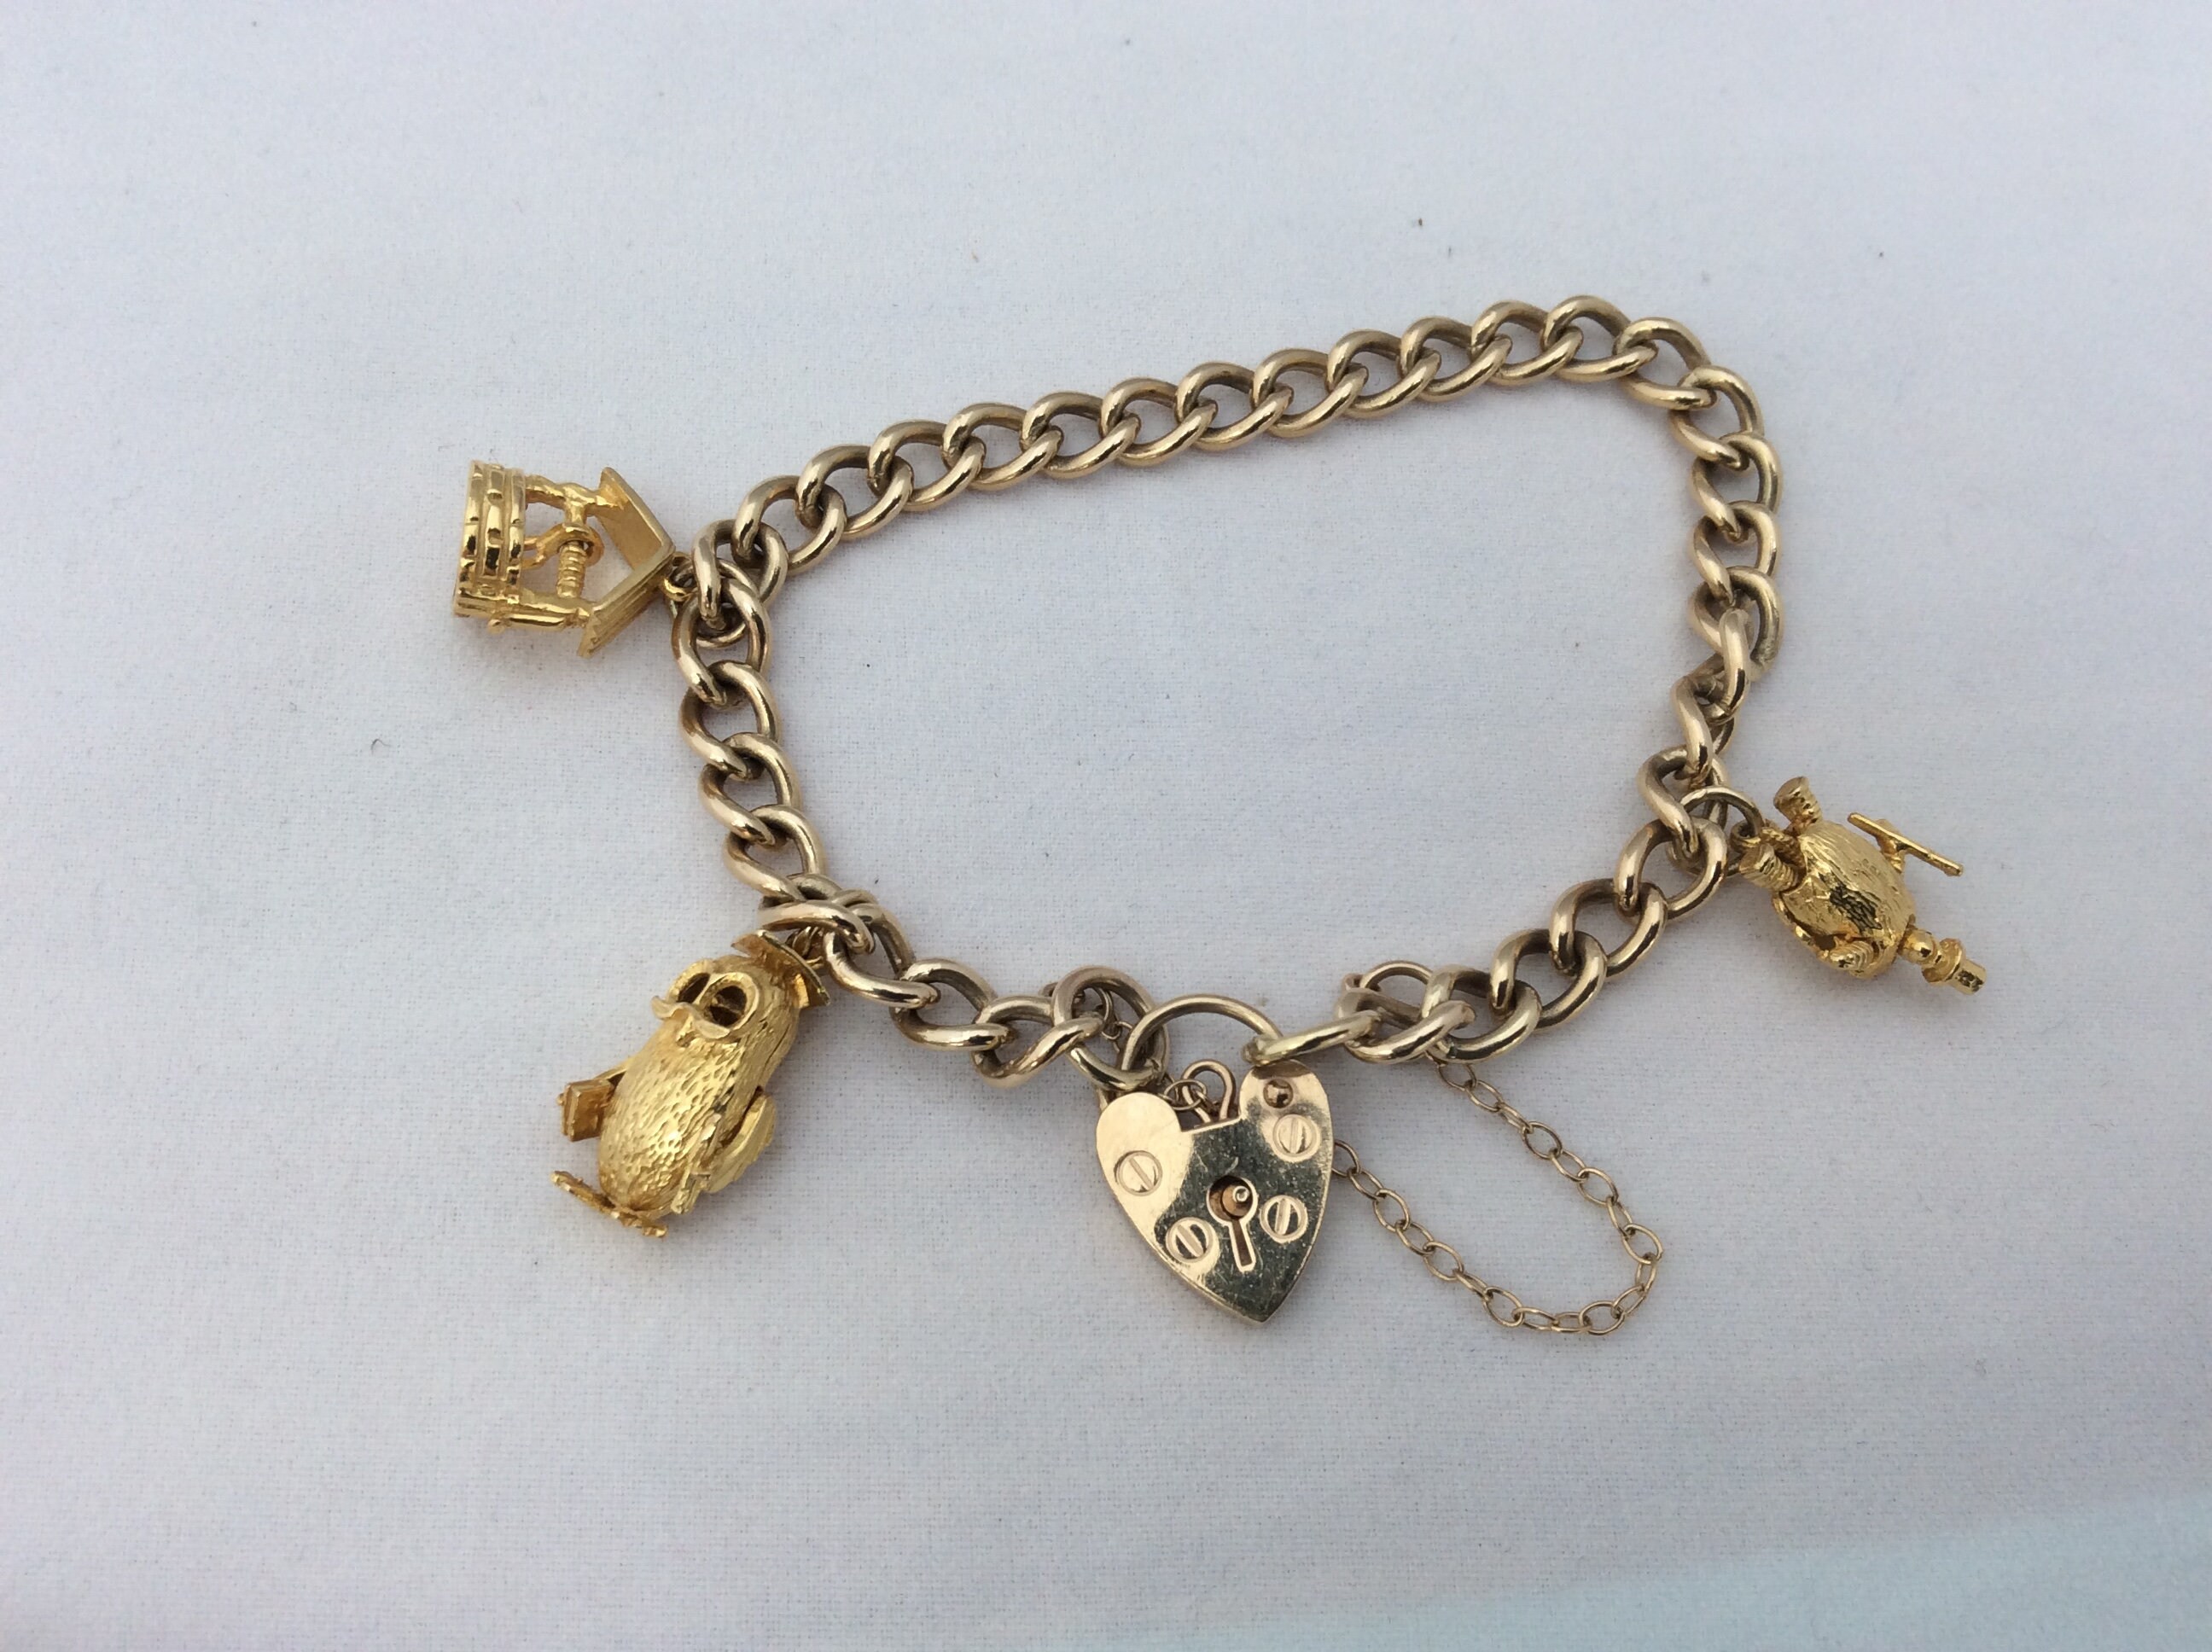 Vintage 9ct Gold Charm Bracelet With Heart Shaped Padlock. - Etsy UK